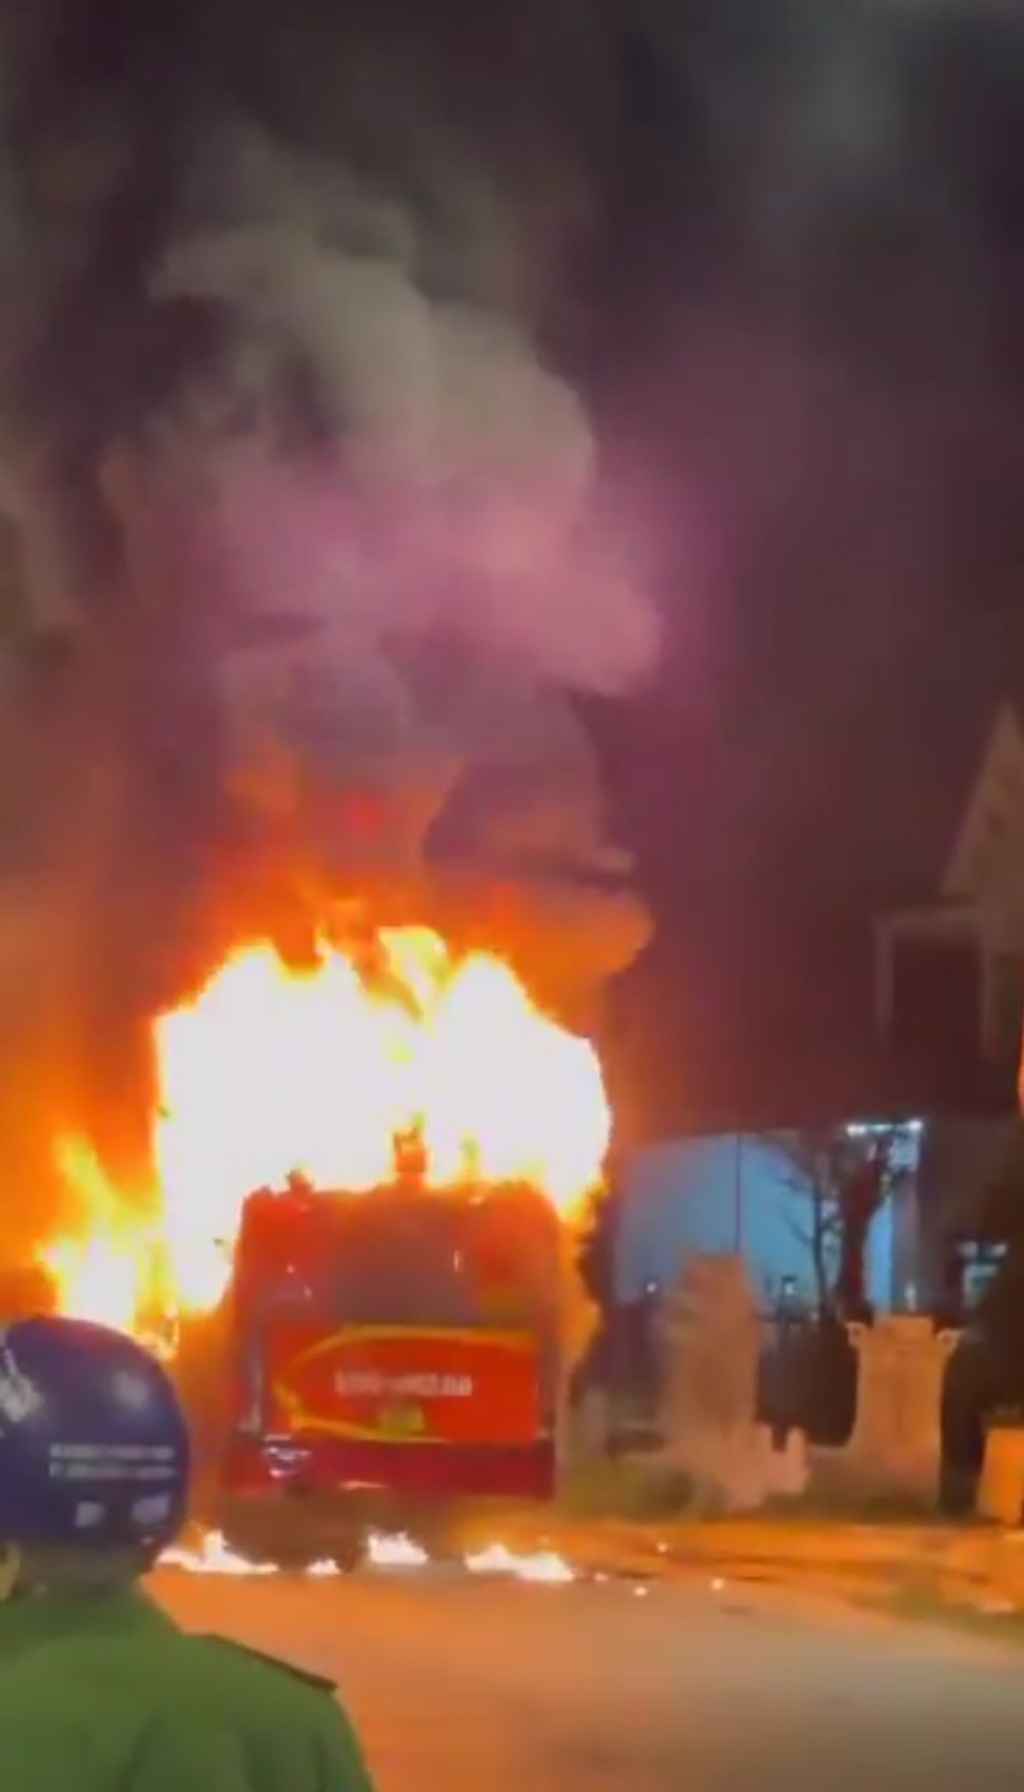 Ô tô khách bốc cháy dữ dội khi đang lưu thông trên đường (ảnh PT)